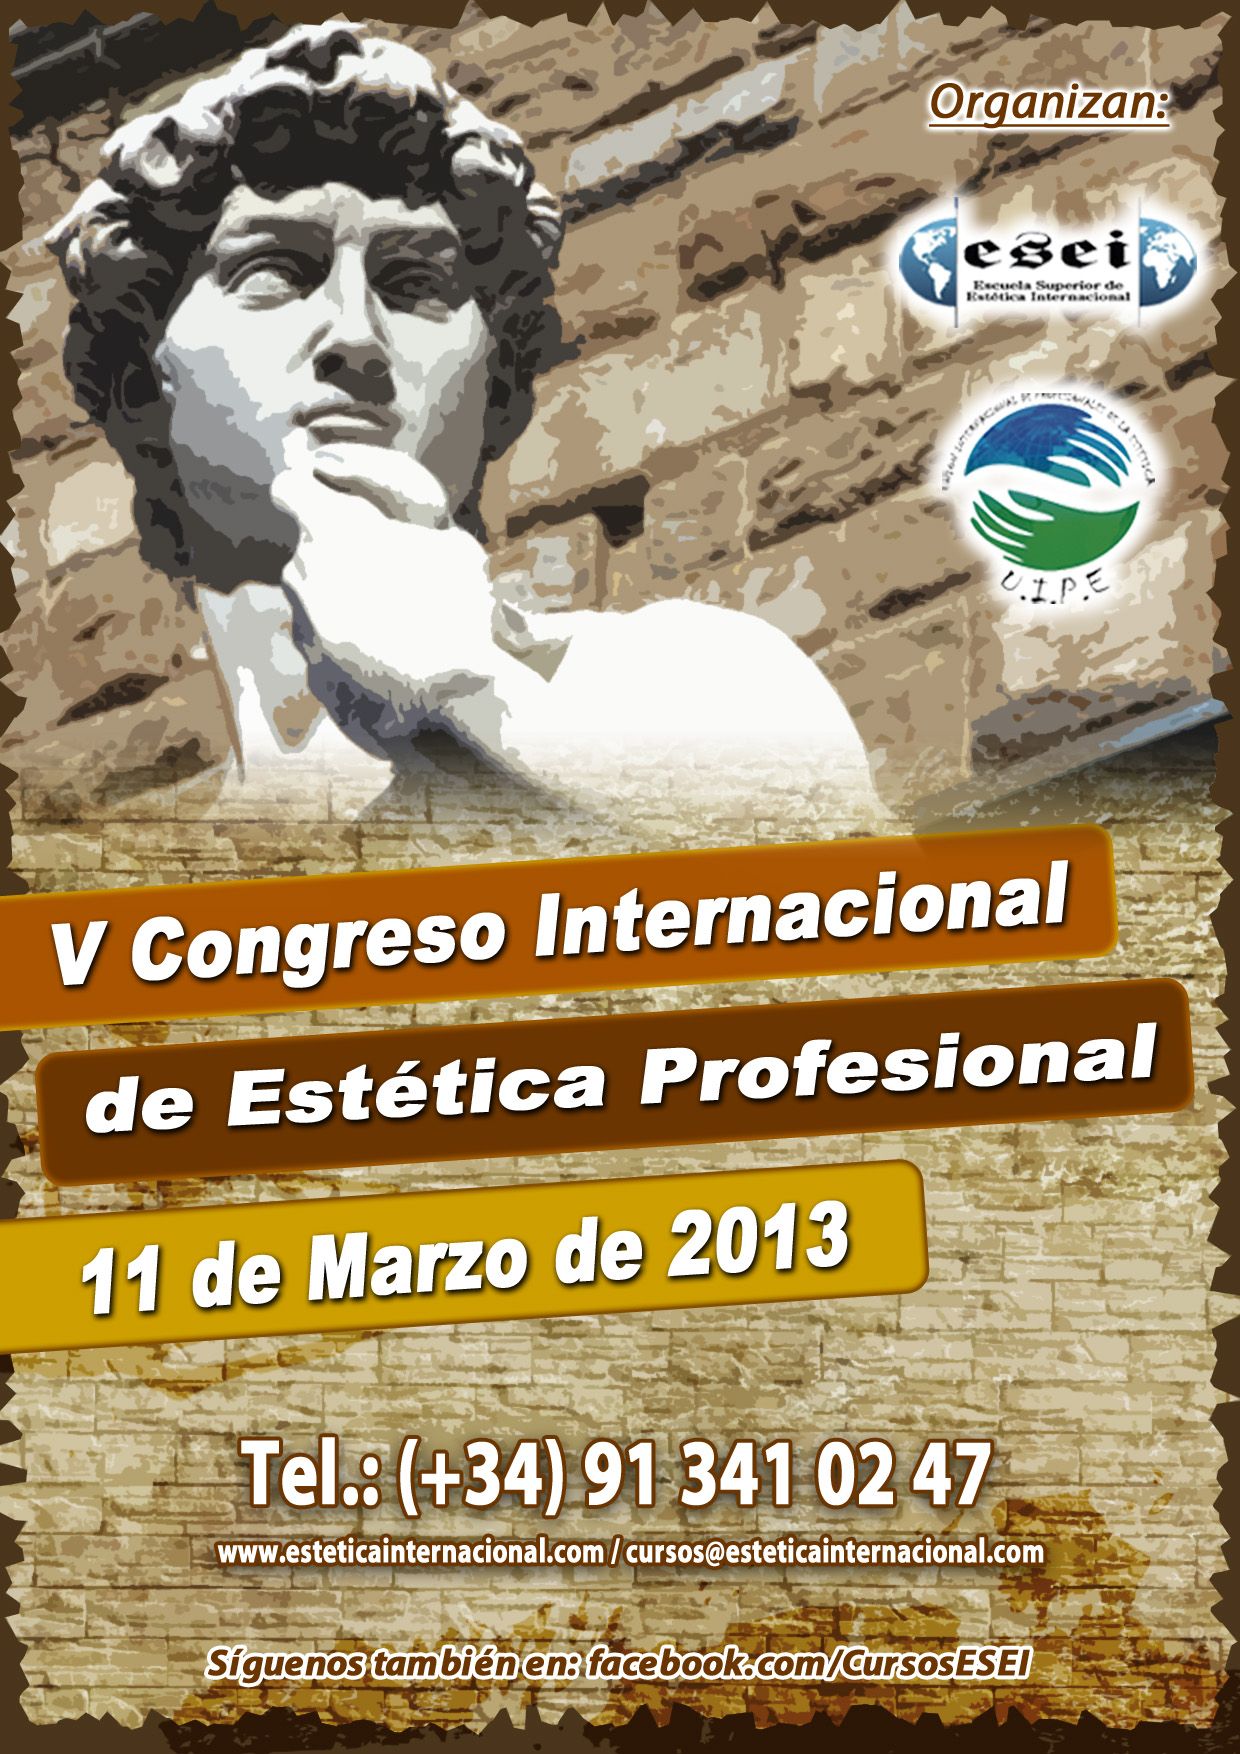 V Congreso Internacional de Estética Profesional 2013